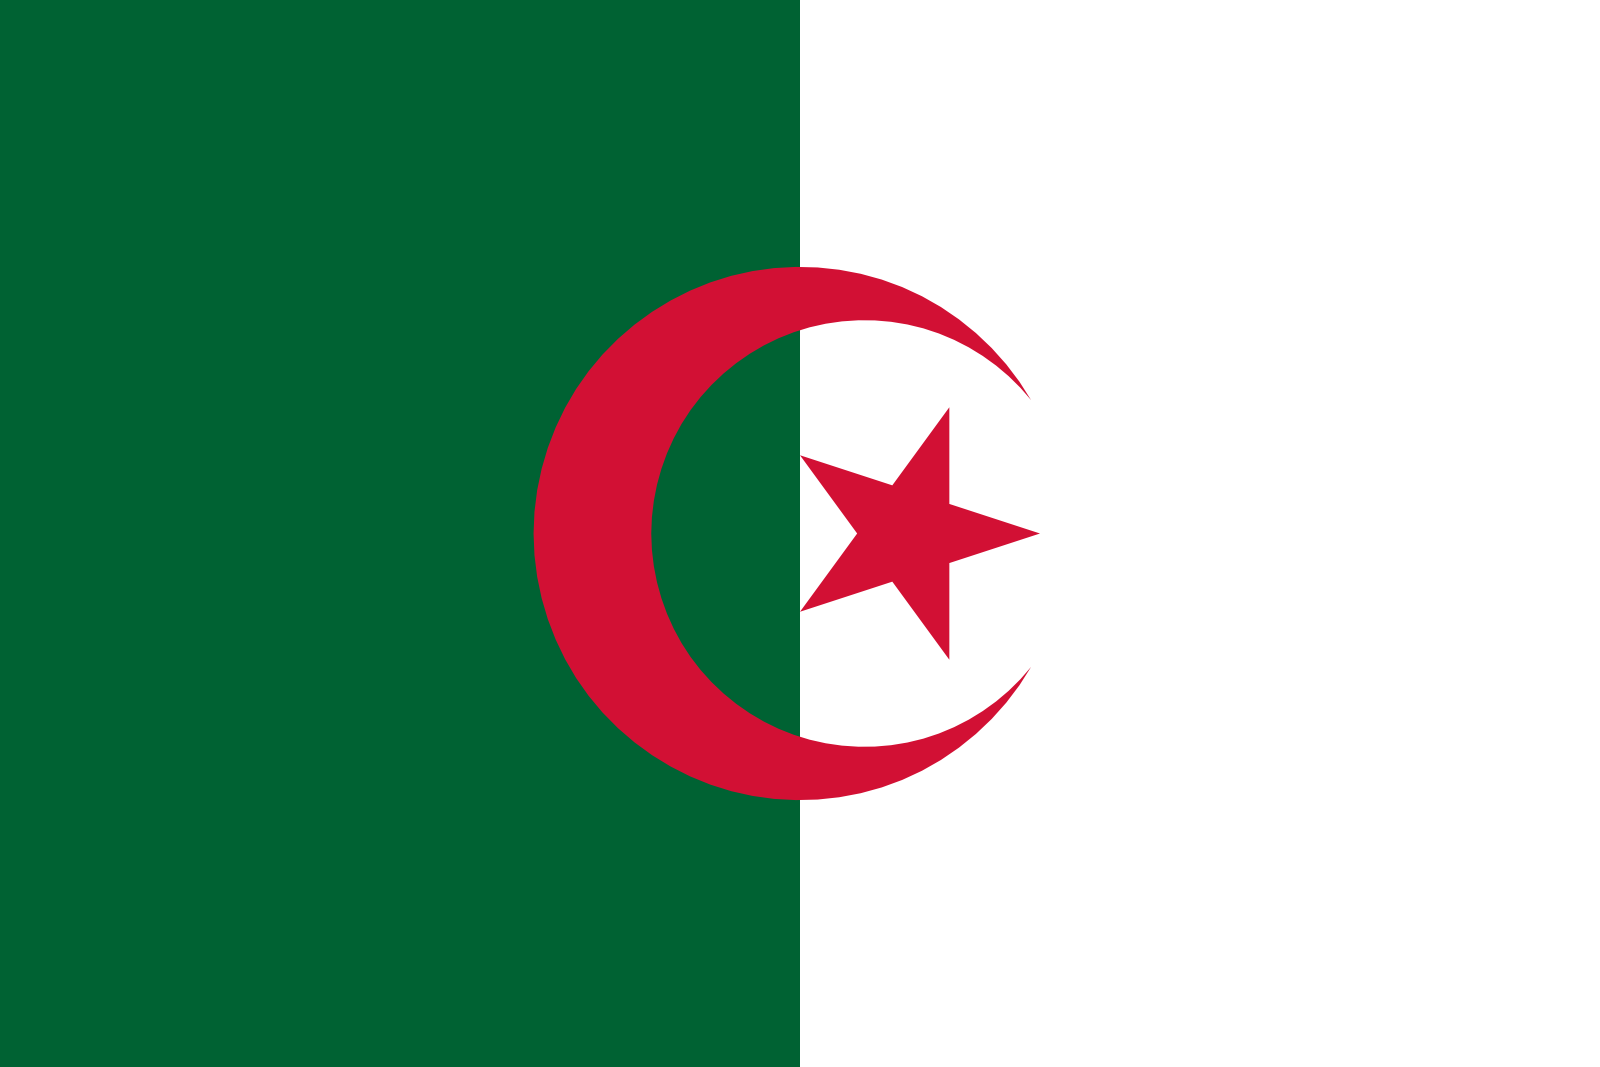 Bild der Staatsflagge Algerien - mit einer Auflösung von 1600x1067 - Afrika